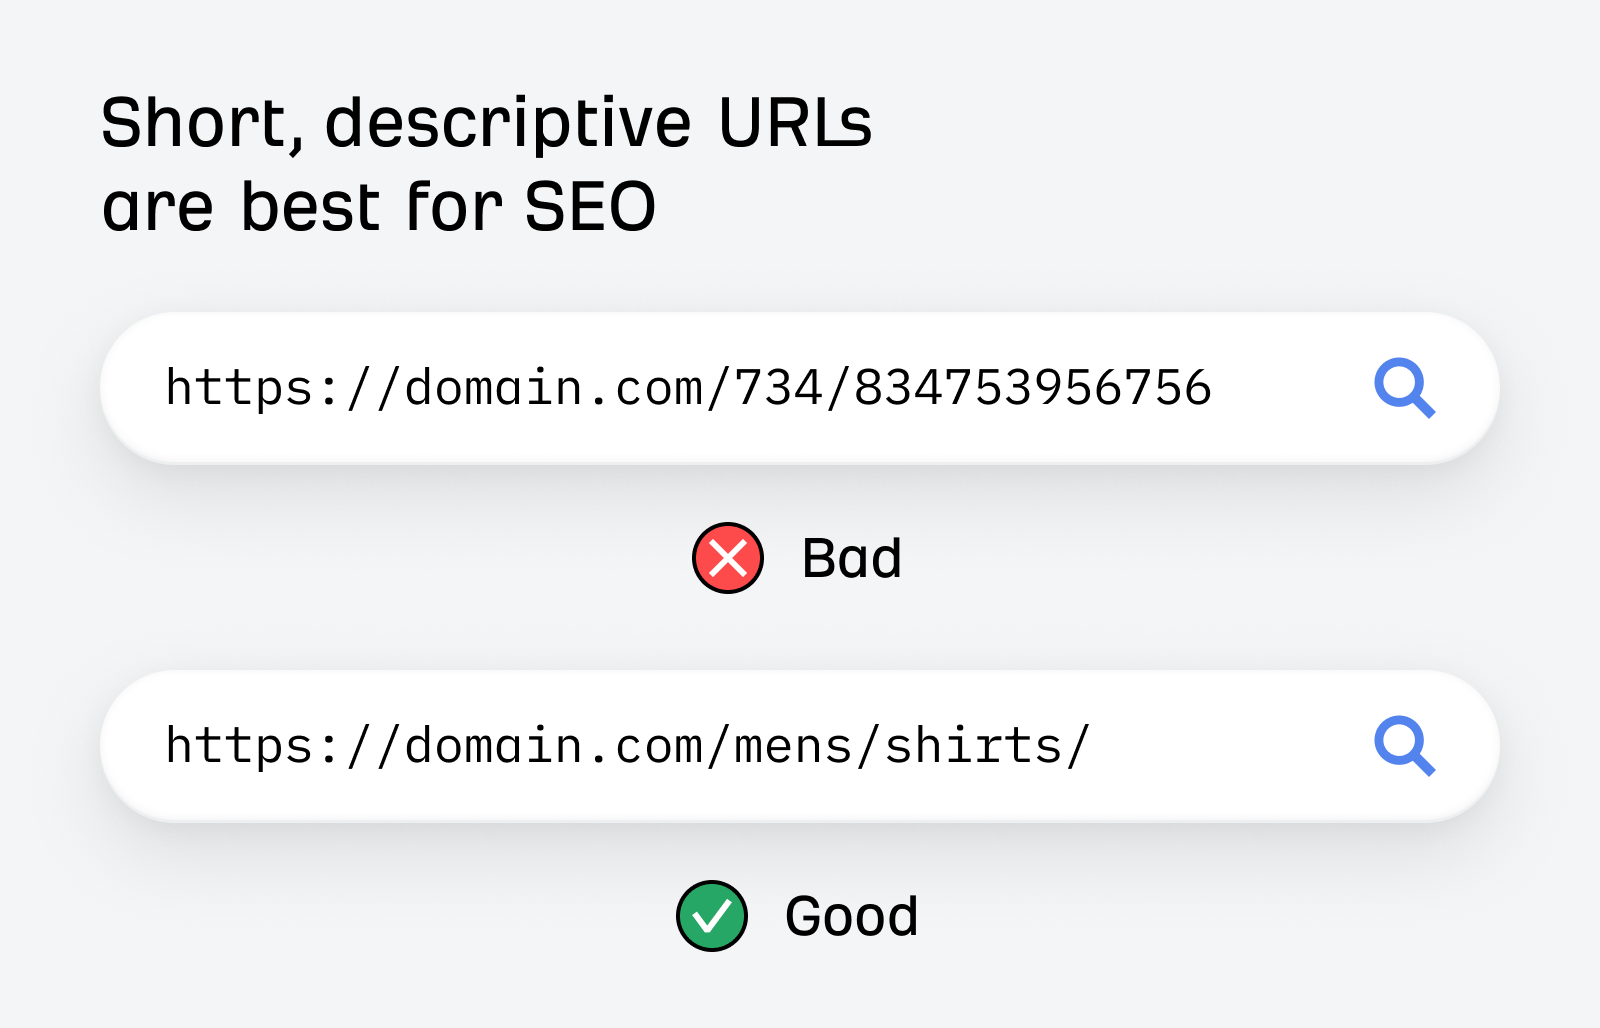 Короткие описательные URL-адреса лучше всего подходят для SEO.